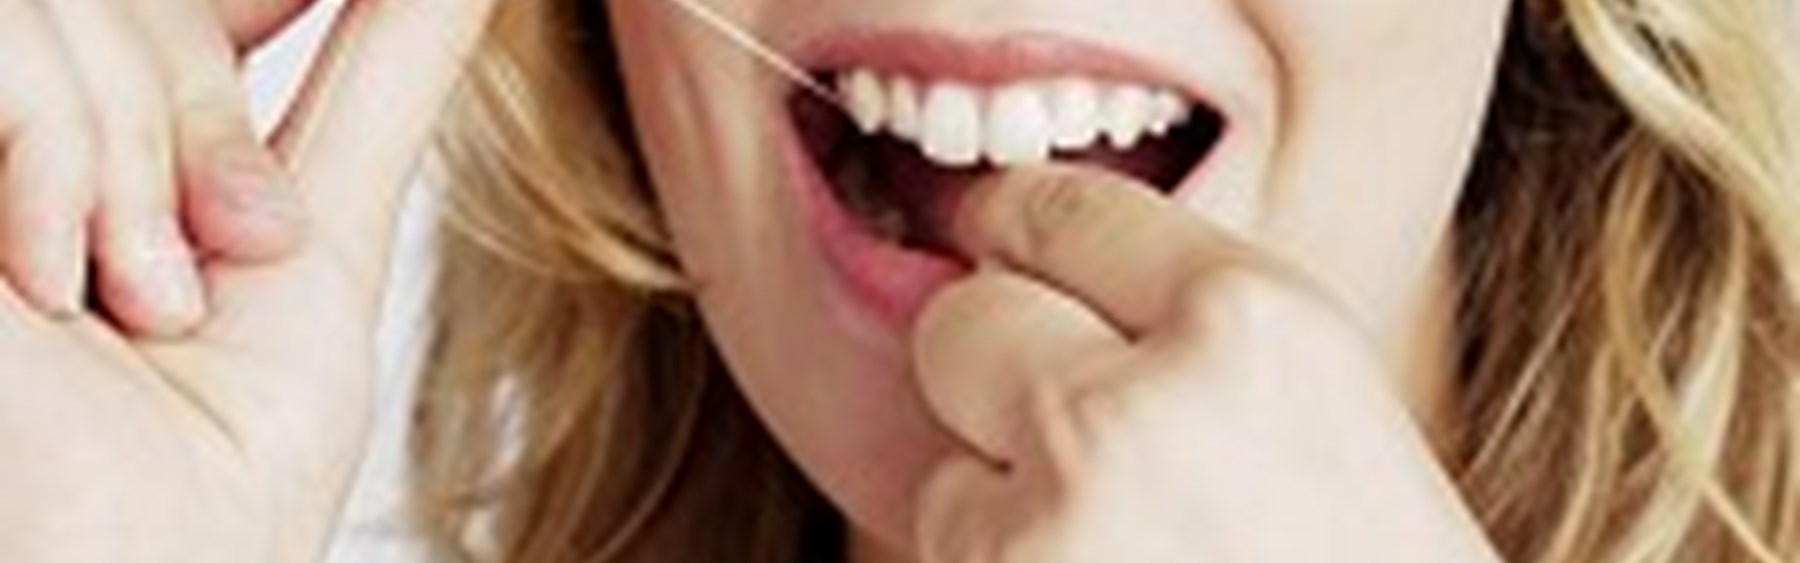 Kvinde, der bruger tandtråd. Hun smiler.